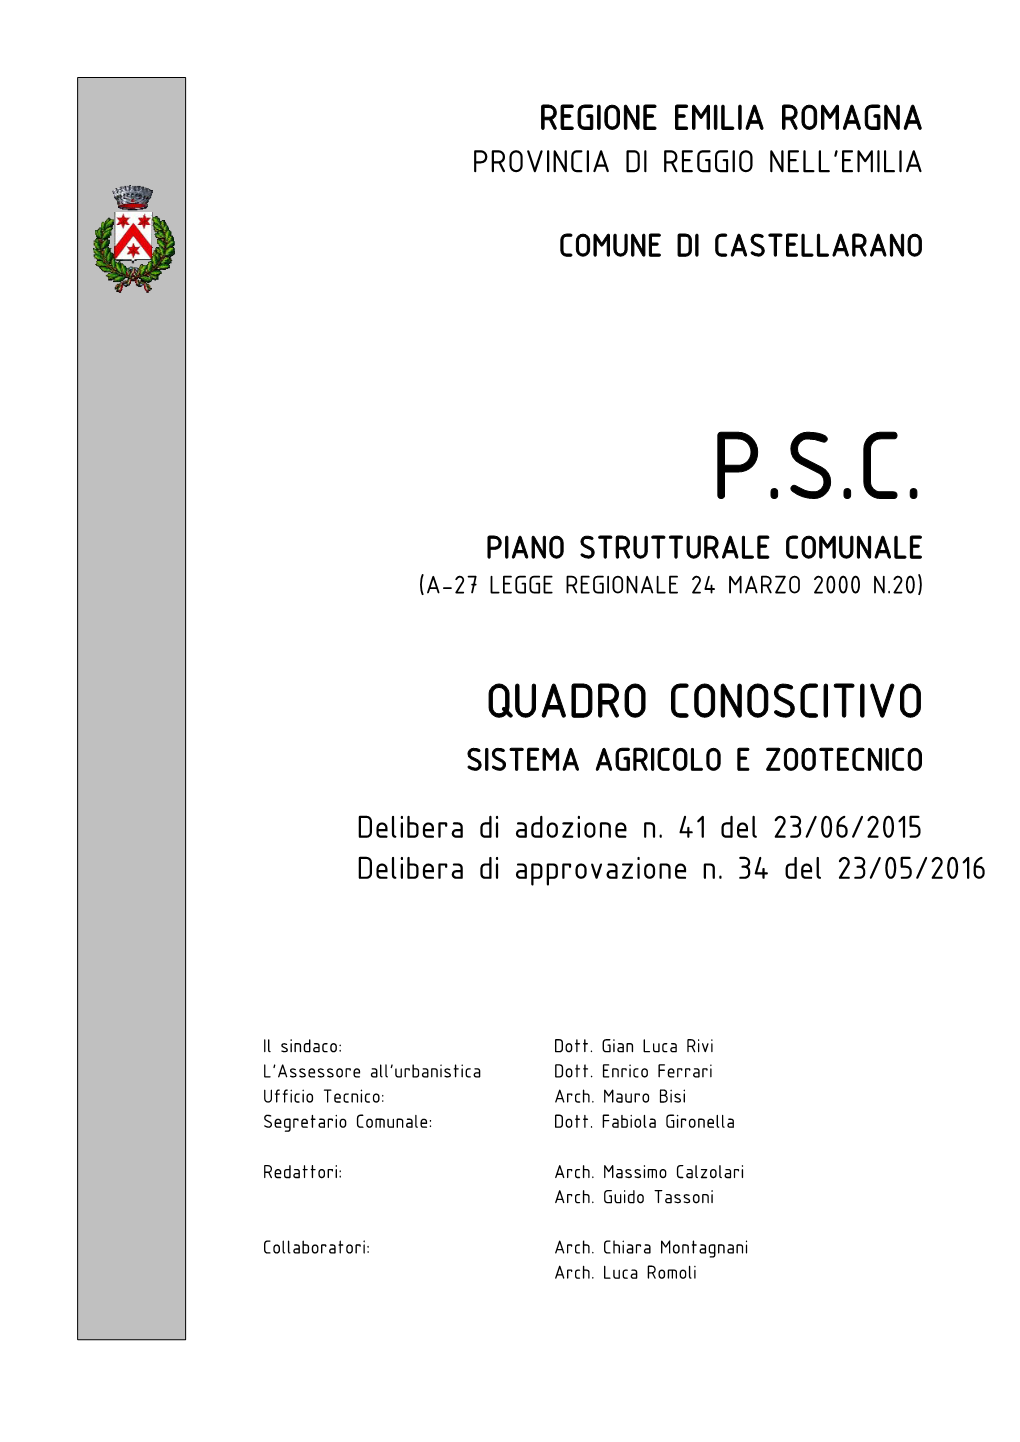 P.S.C. Piano Strutturale Comunale (A-27 Legge Regionale 24 Marzo 2000 N.20)